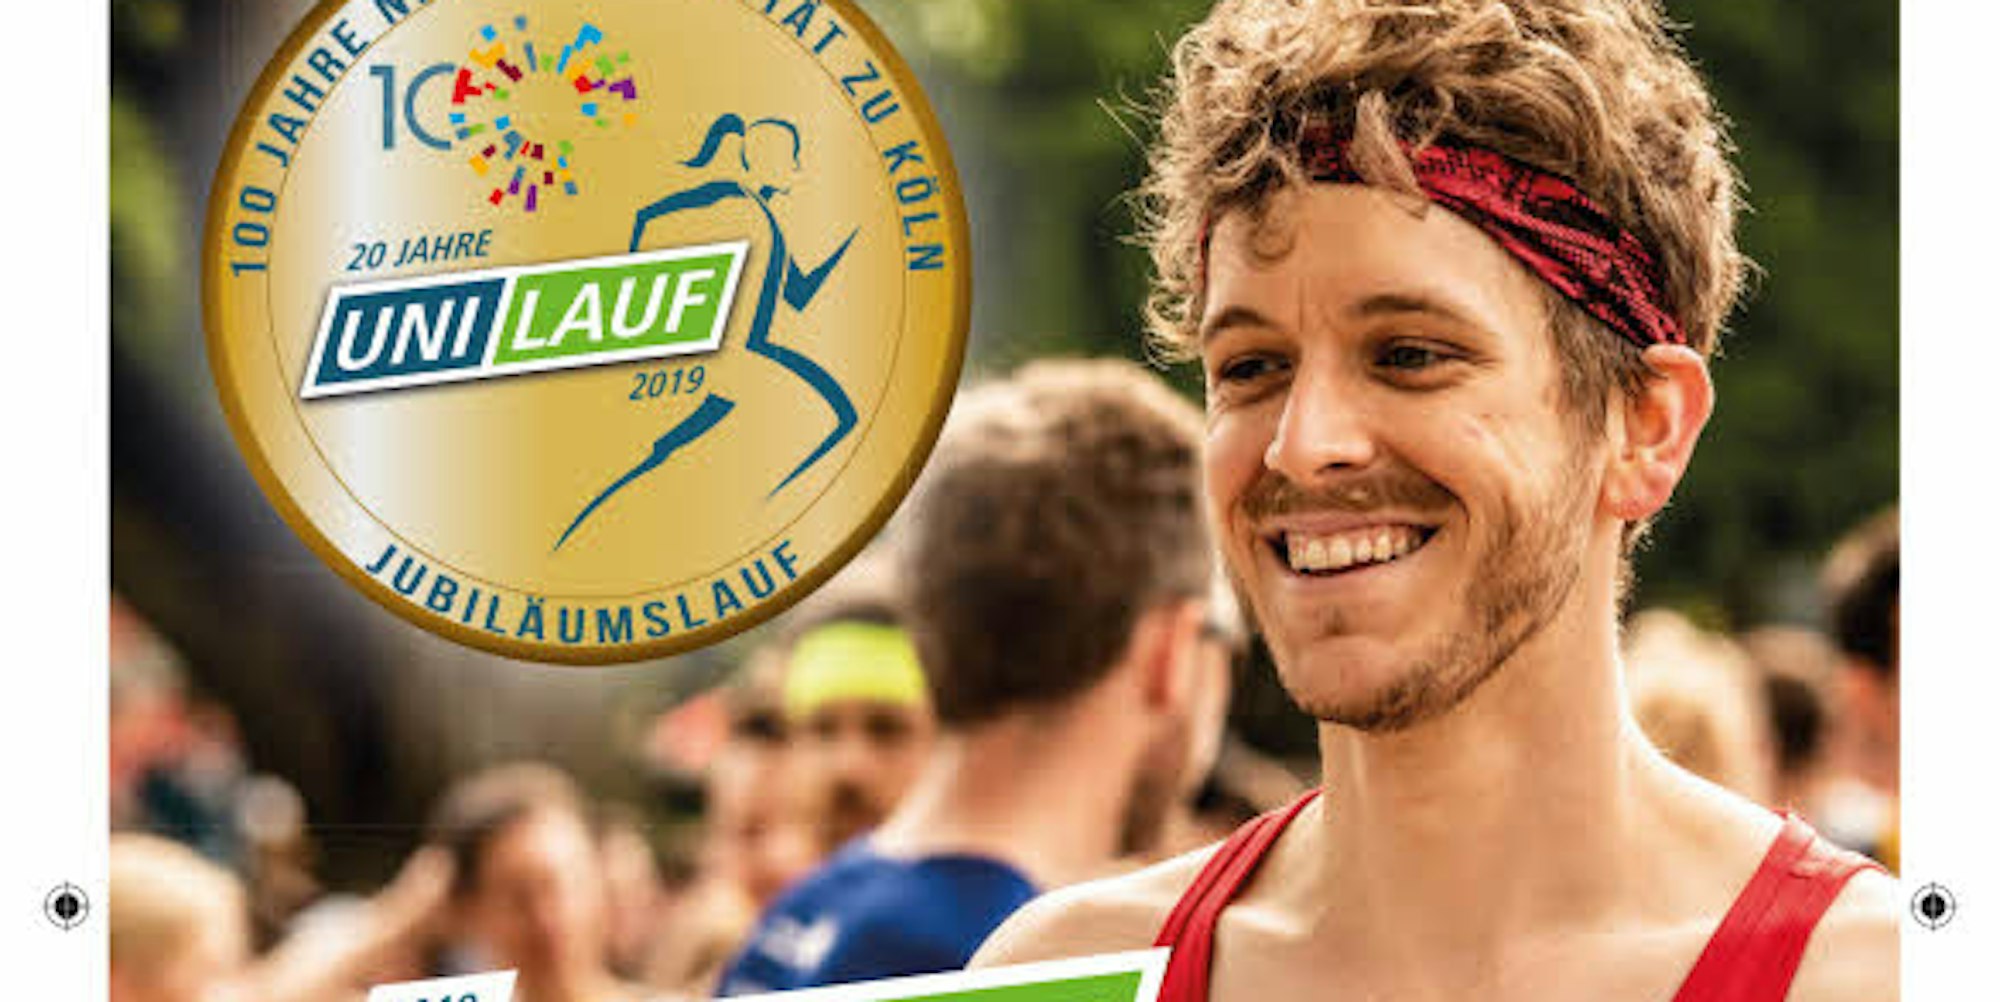 Wirbt für den Uni-Lauf: Thomas Claeßens vom NRW-Cup-Team ist das Covermodel der Laufveranstaltung.